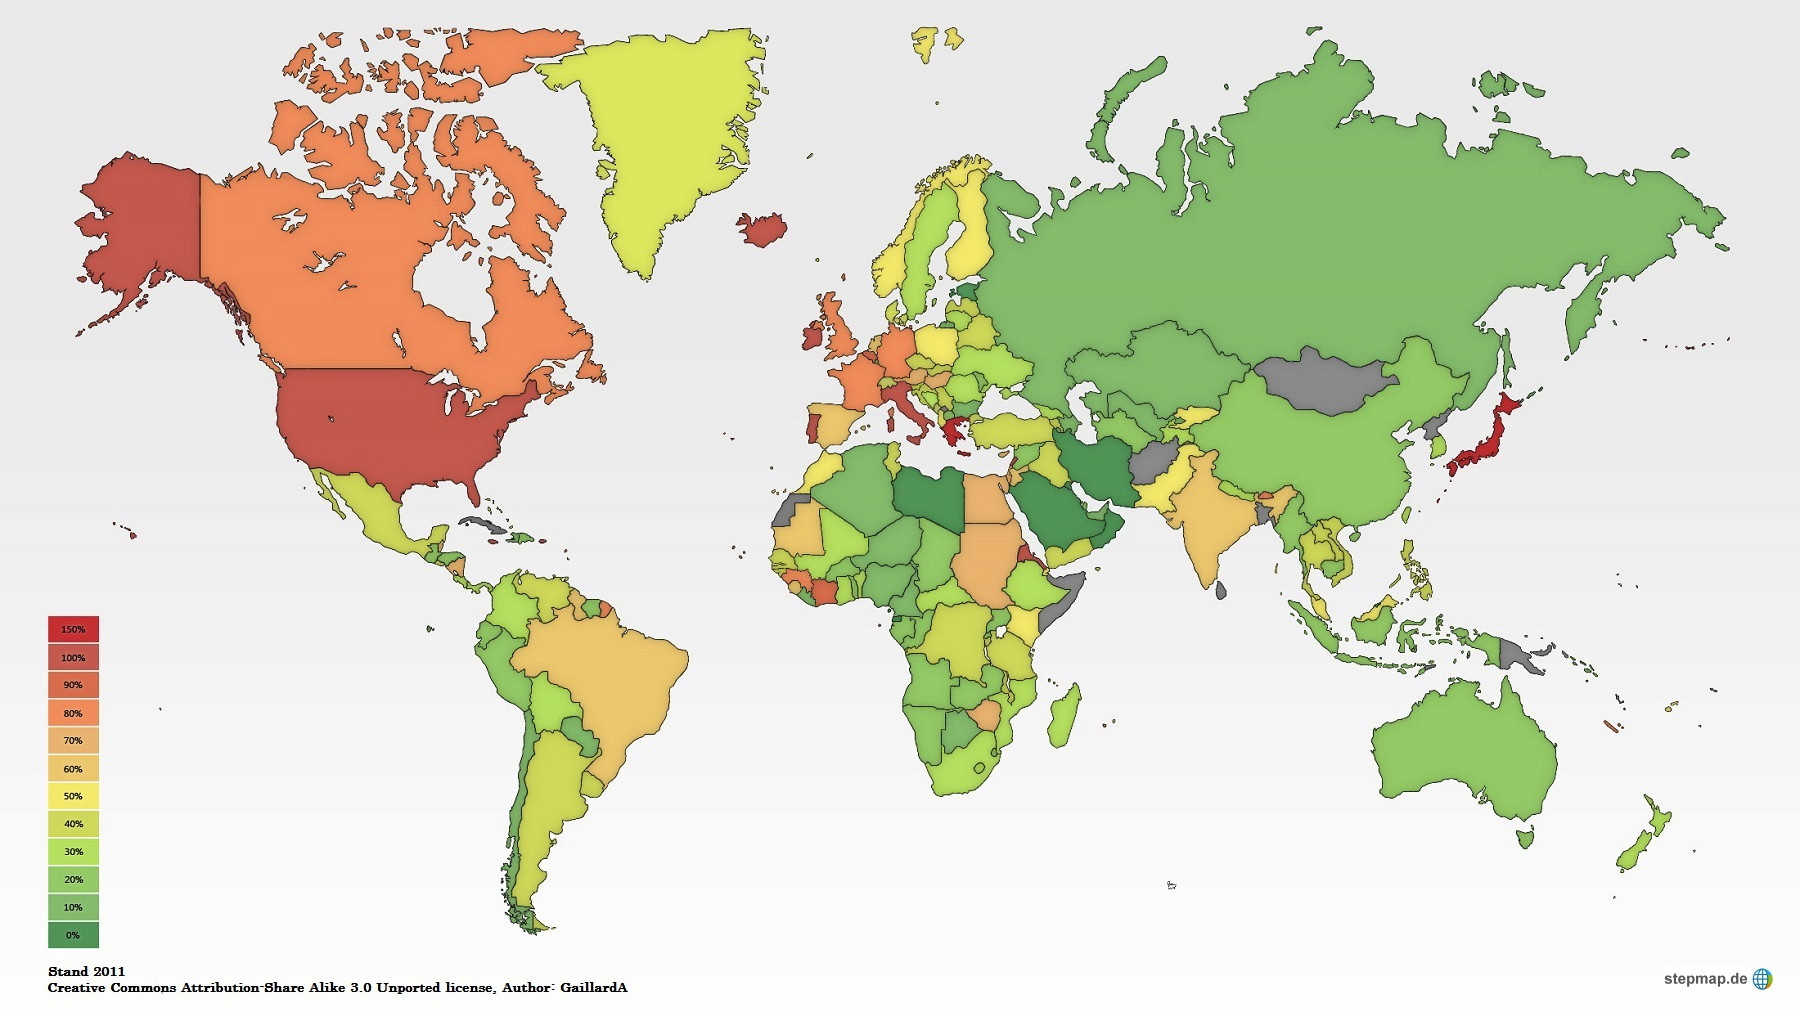 Die Karte zeigt die Verschuldung der Staaten in Relation zum Brutto-Inlandprodukt BIP. (Quelle: www.stepmap.de)